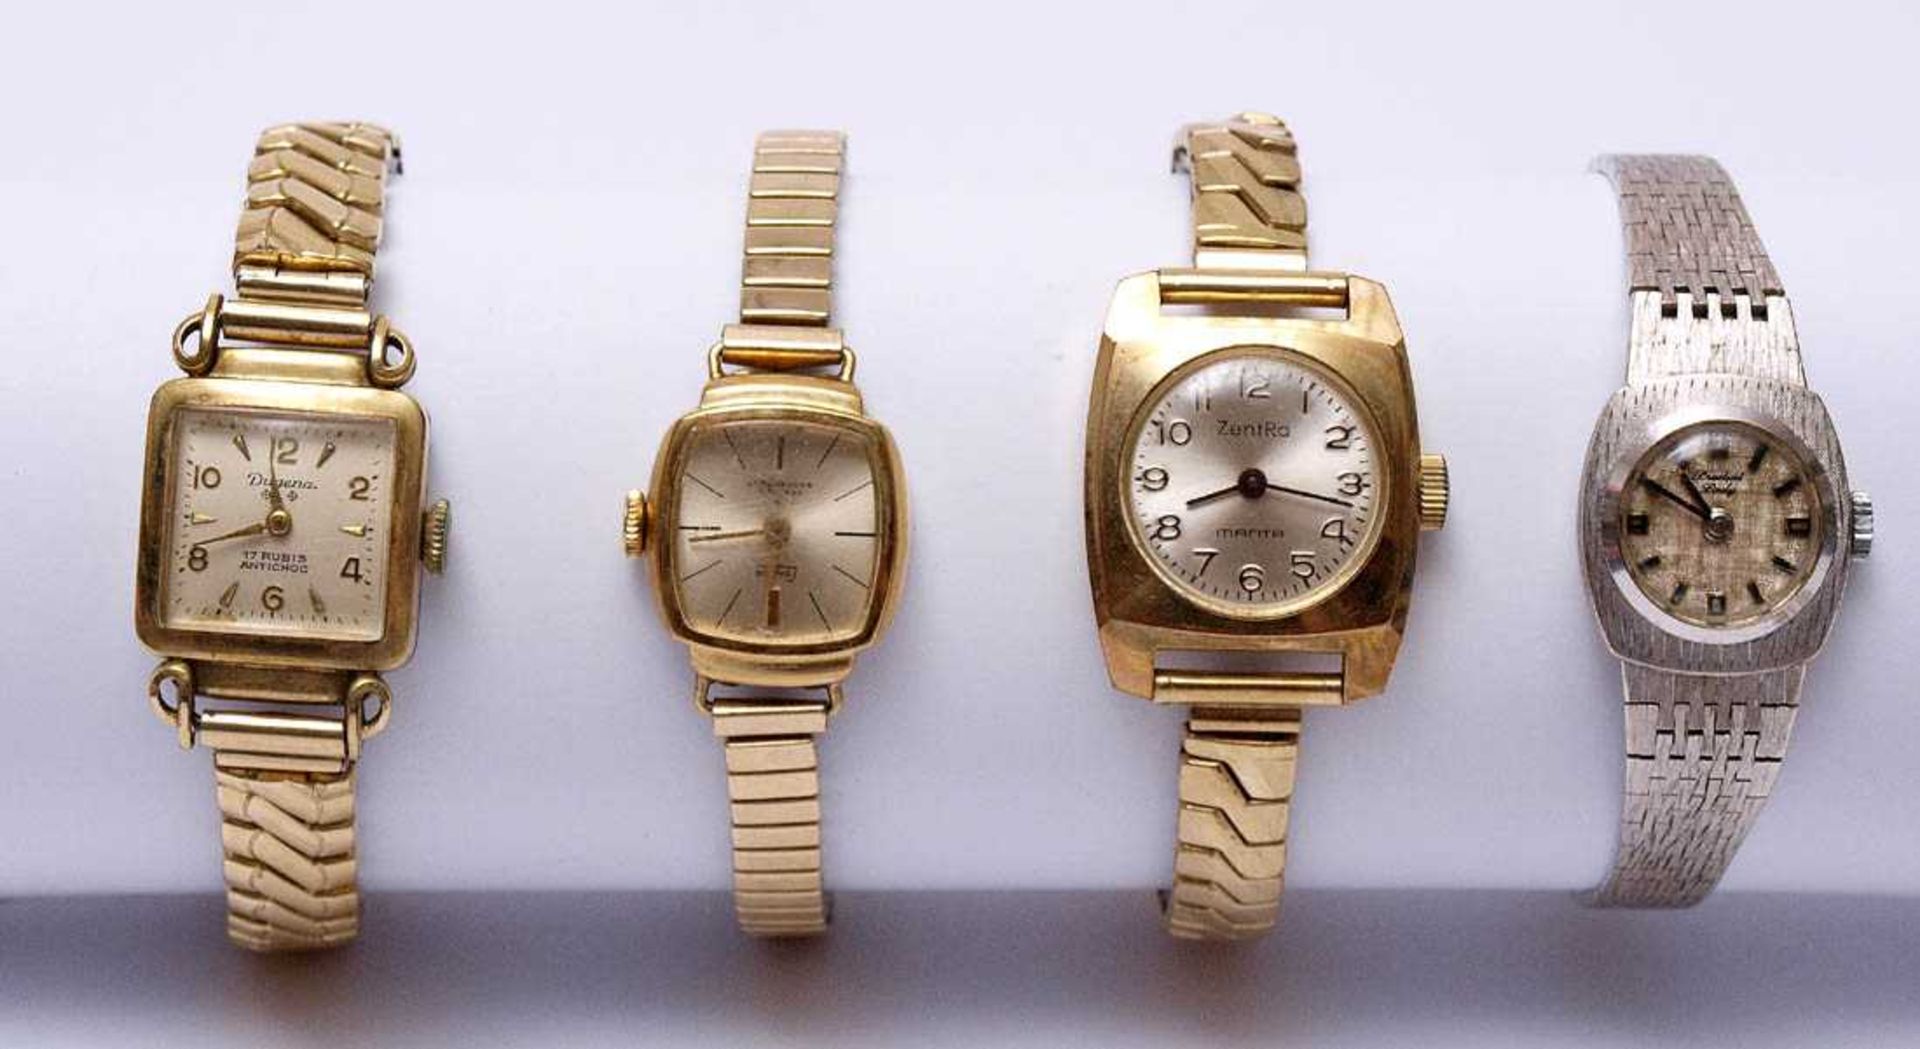 KonvolutVier Damenarmbanduhren, eine Herrenarmbanduhr, eine Taschenuhr und ein Kartenmetermaß. - Bild 2 aus 2